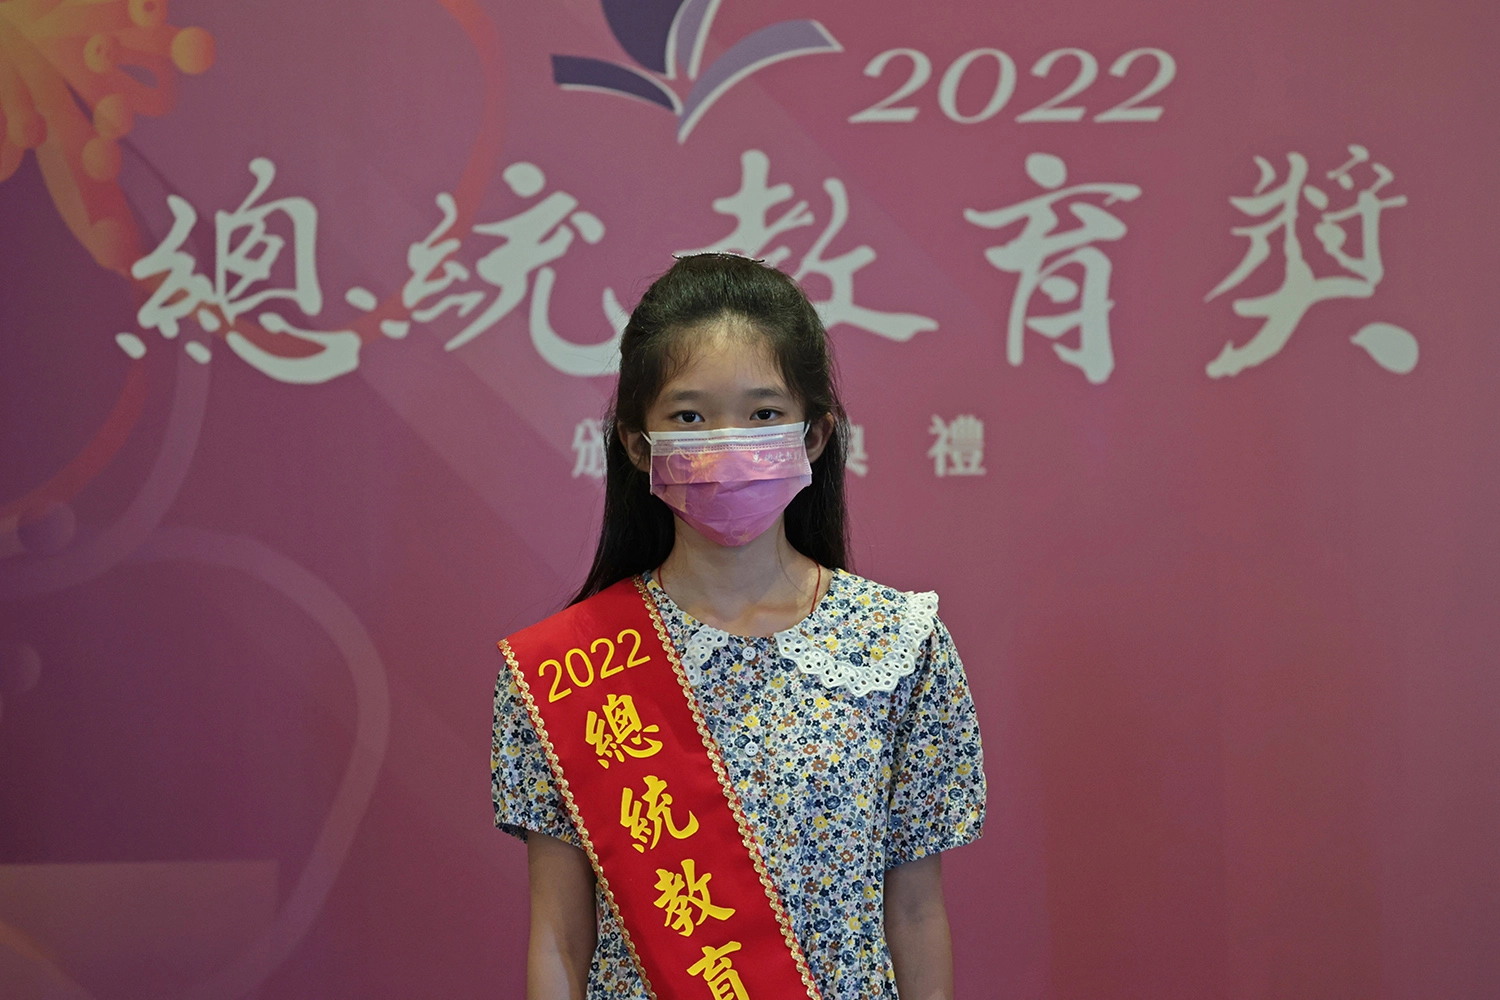 年紀最小的得獎者 黃宜萱同學。